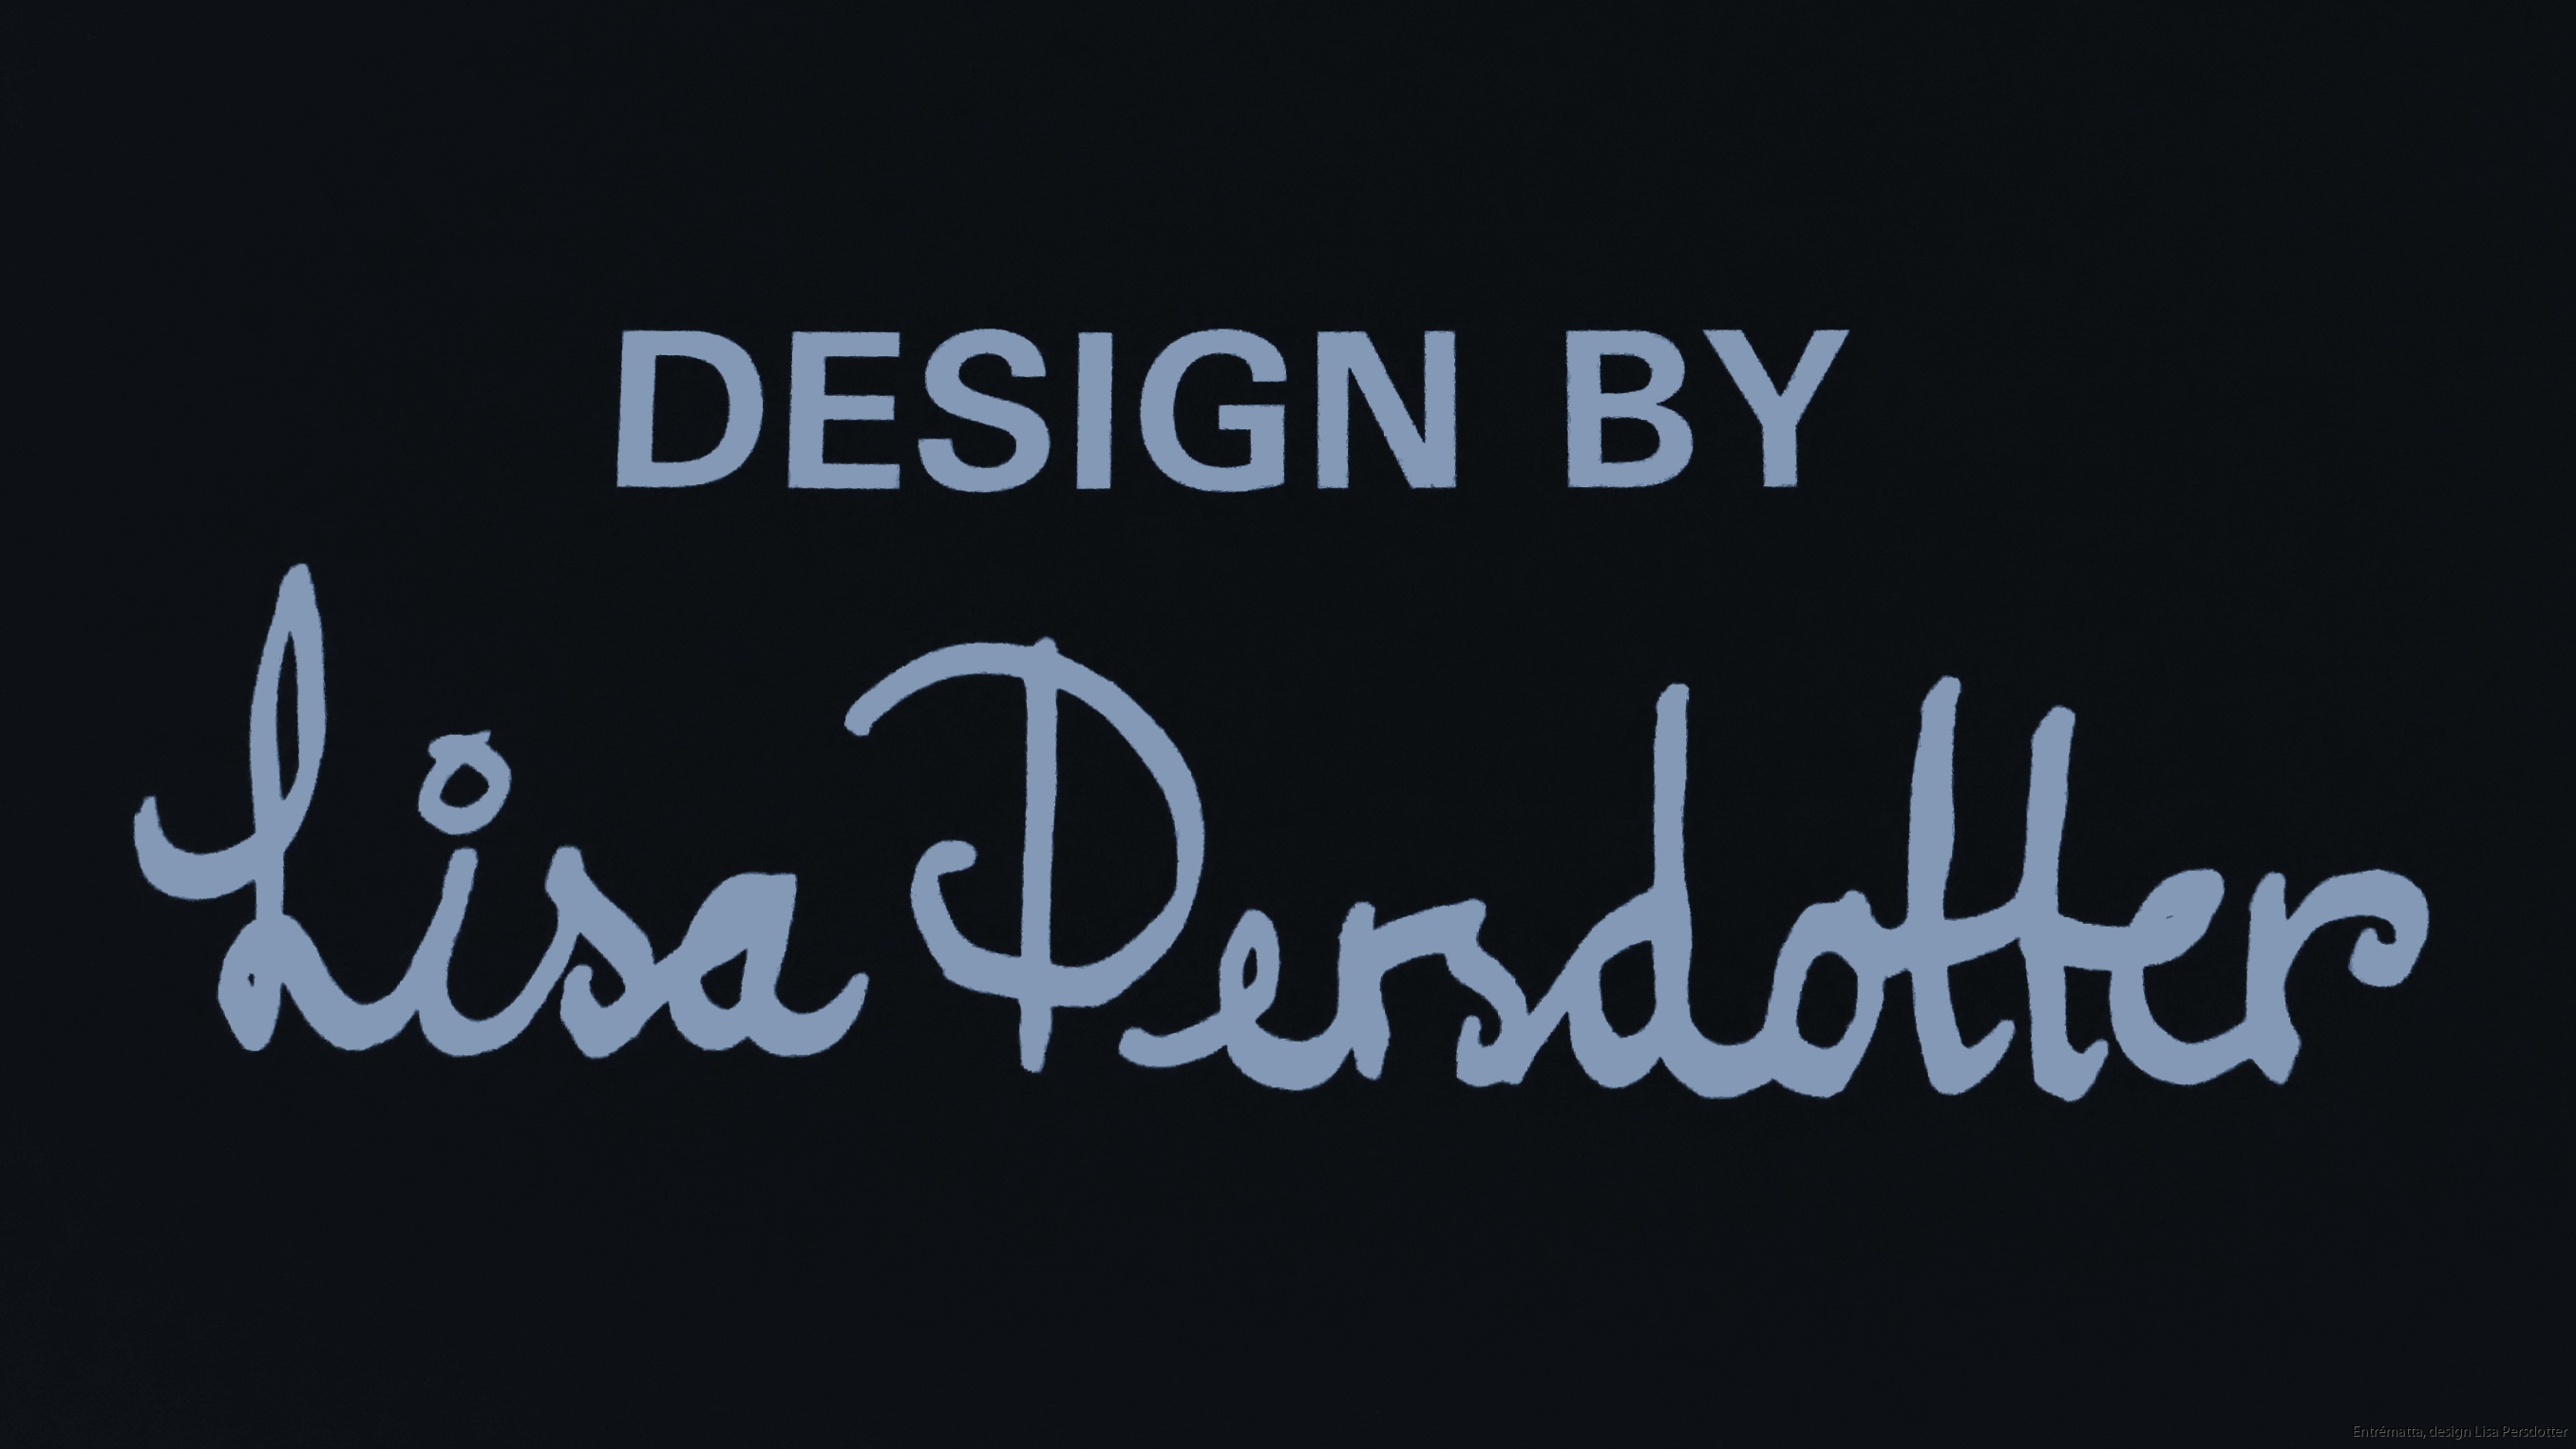 Design Lisa Persdotter 